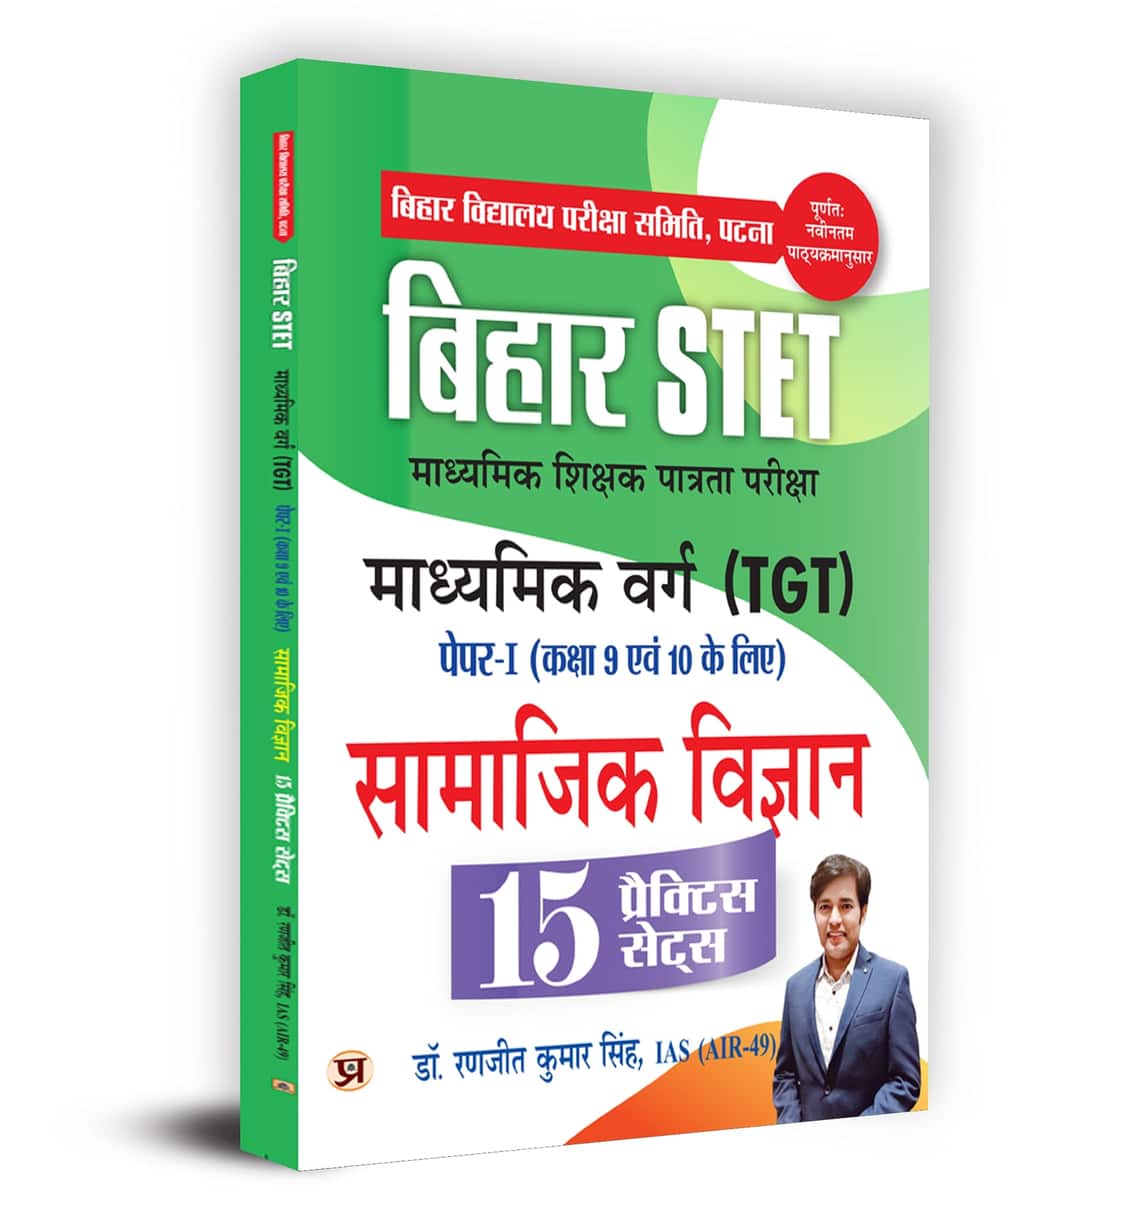 Bihar STET Madhyamik Shikshak Patrata Pariksha Madhyamik Varg Samajik Vigyan (TGT) Paper-1 (Class 9 & 10) Social Science 15 Practice Sets